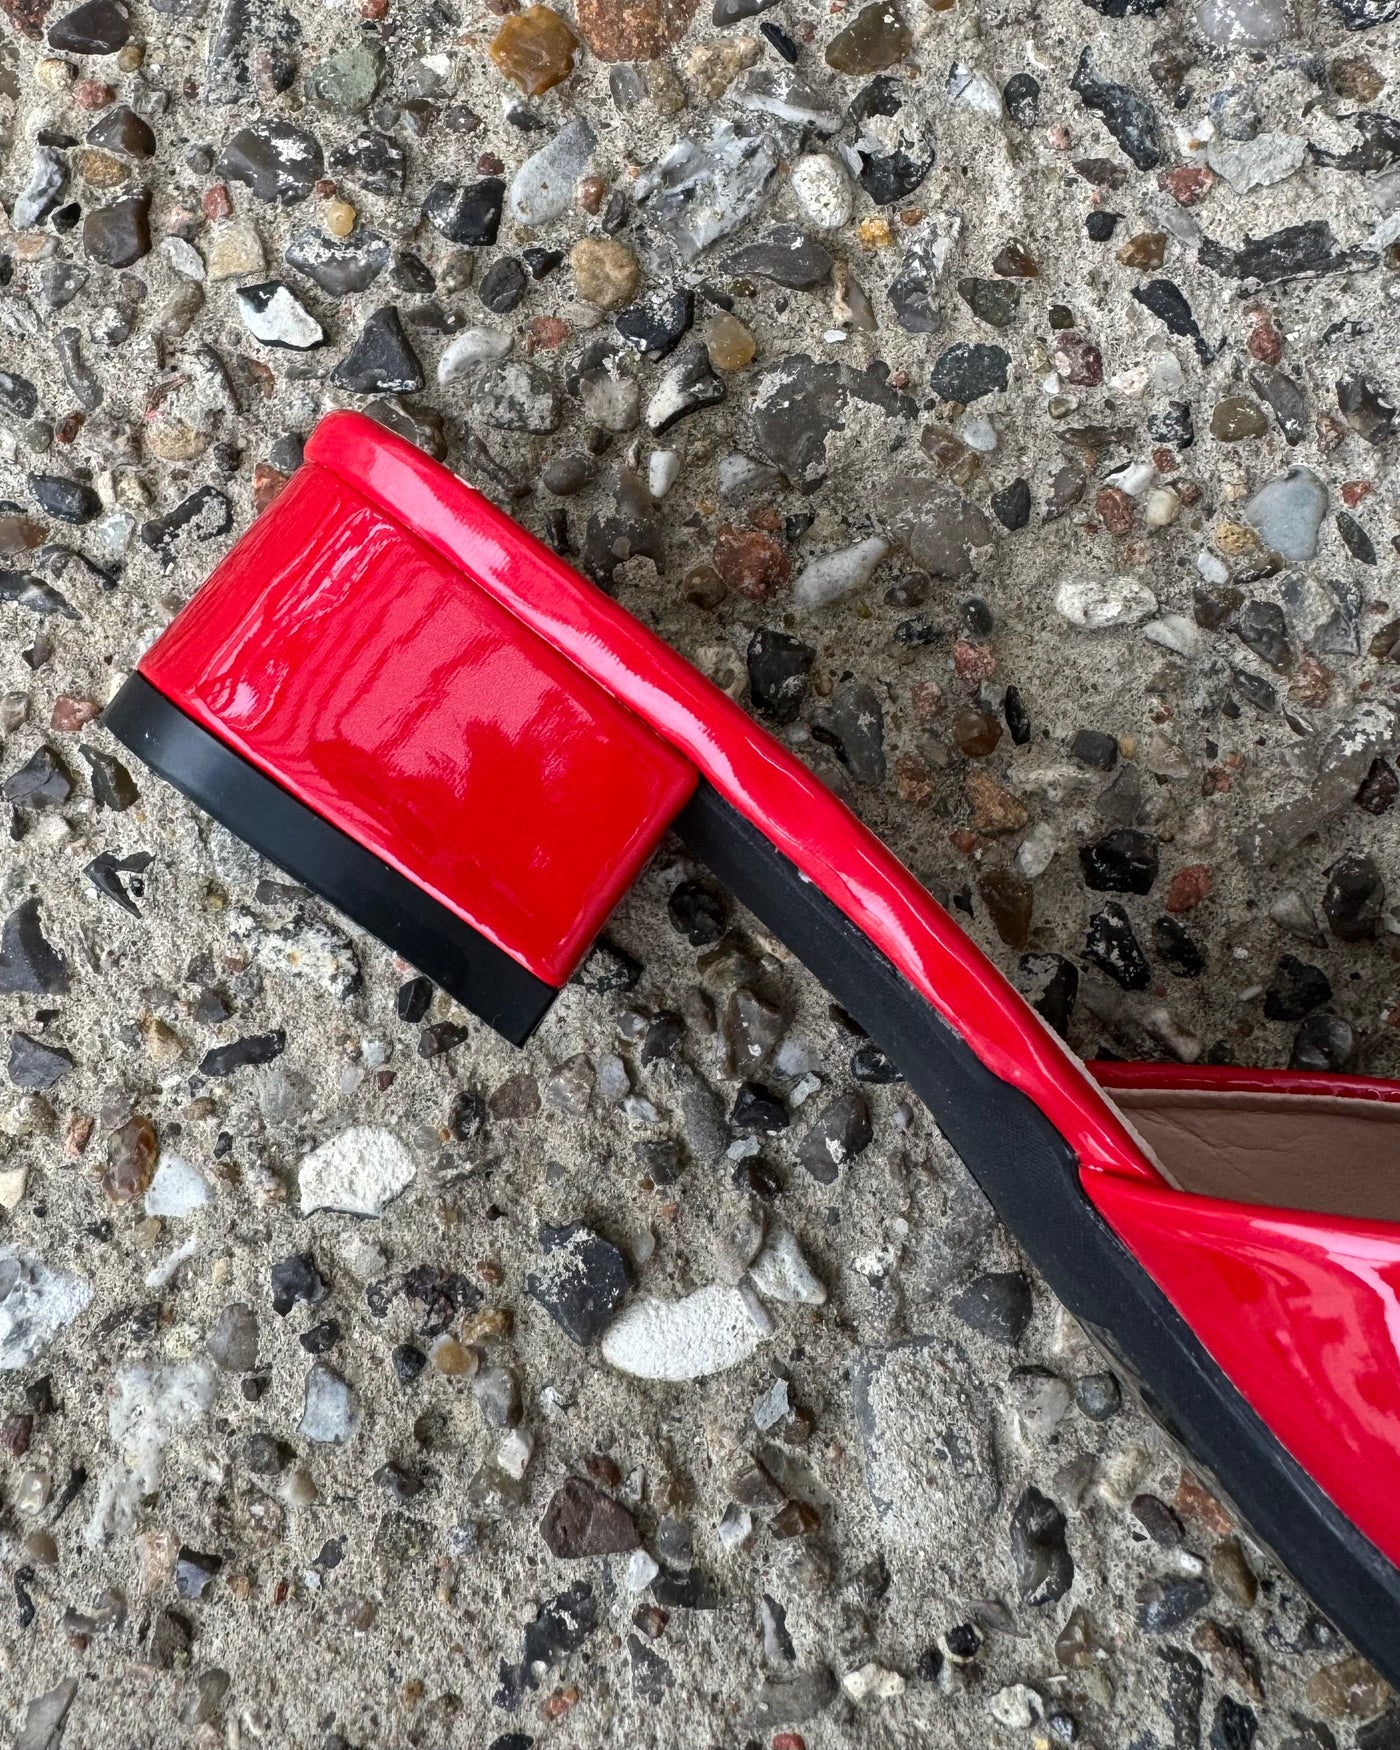 Sophia højhælede sandaler rød